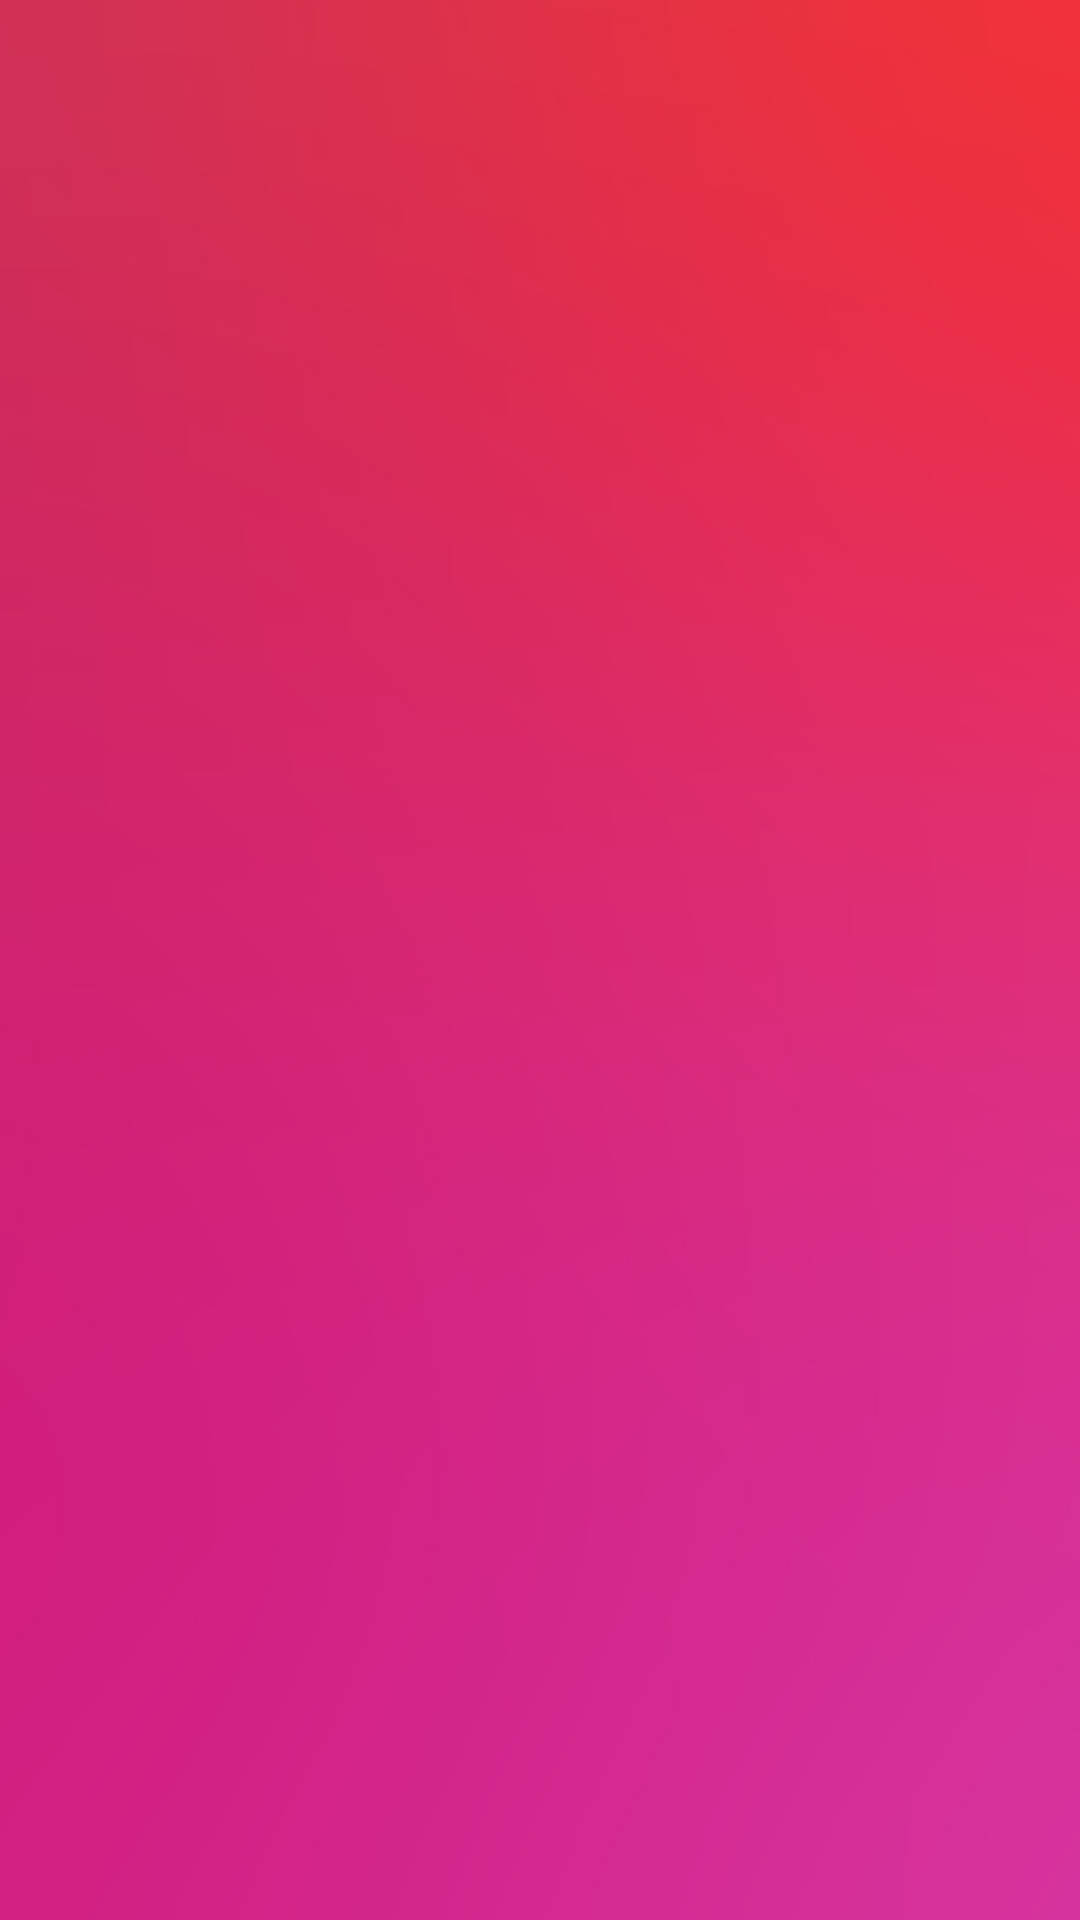 Einelegantes Pinkes Iphone Xr Mit Ansprechendem Design. Wallpaper